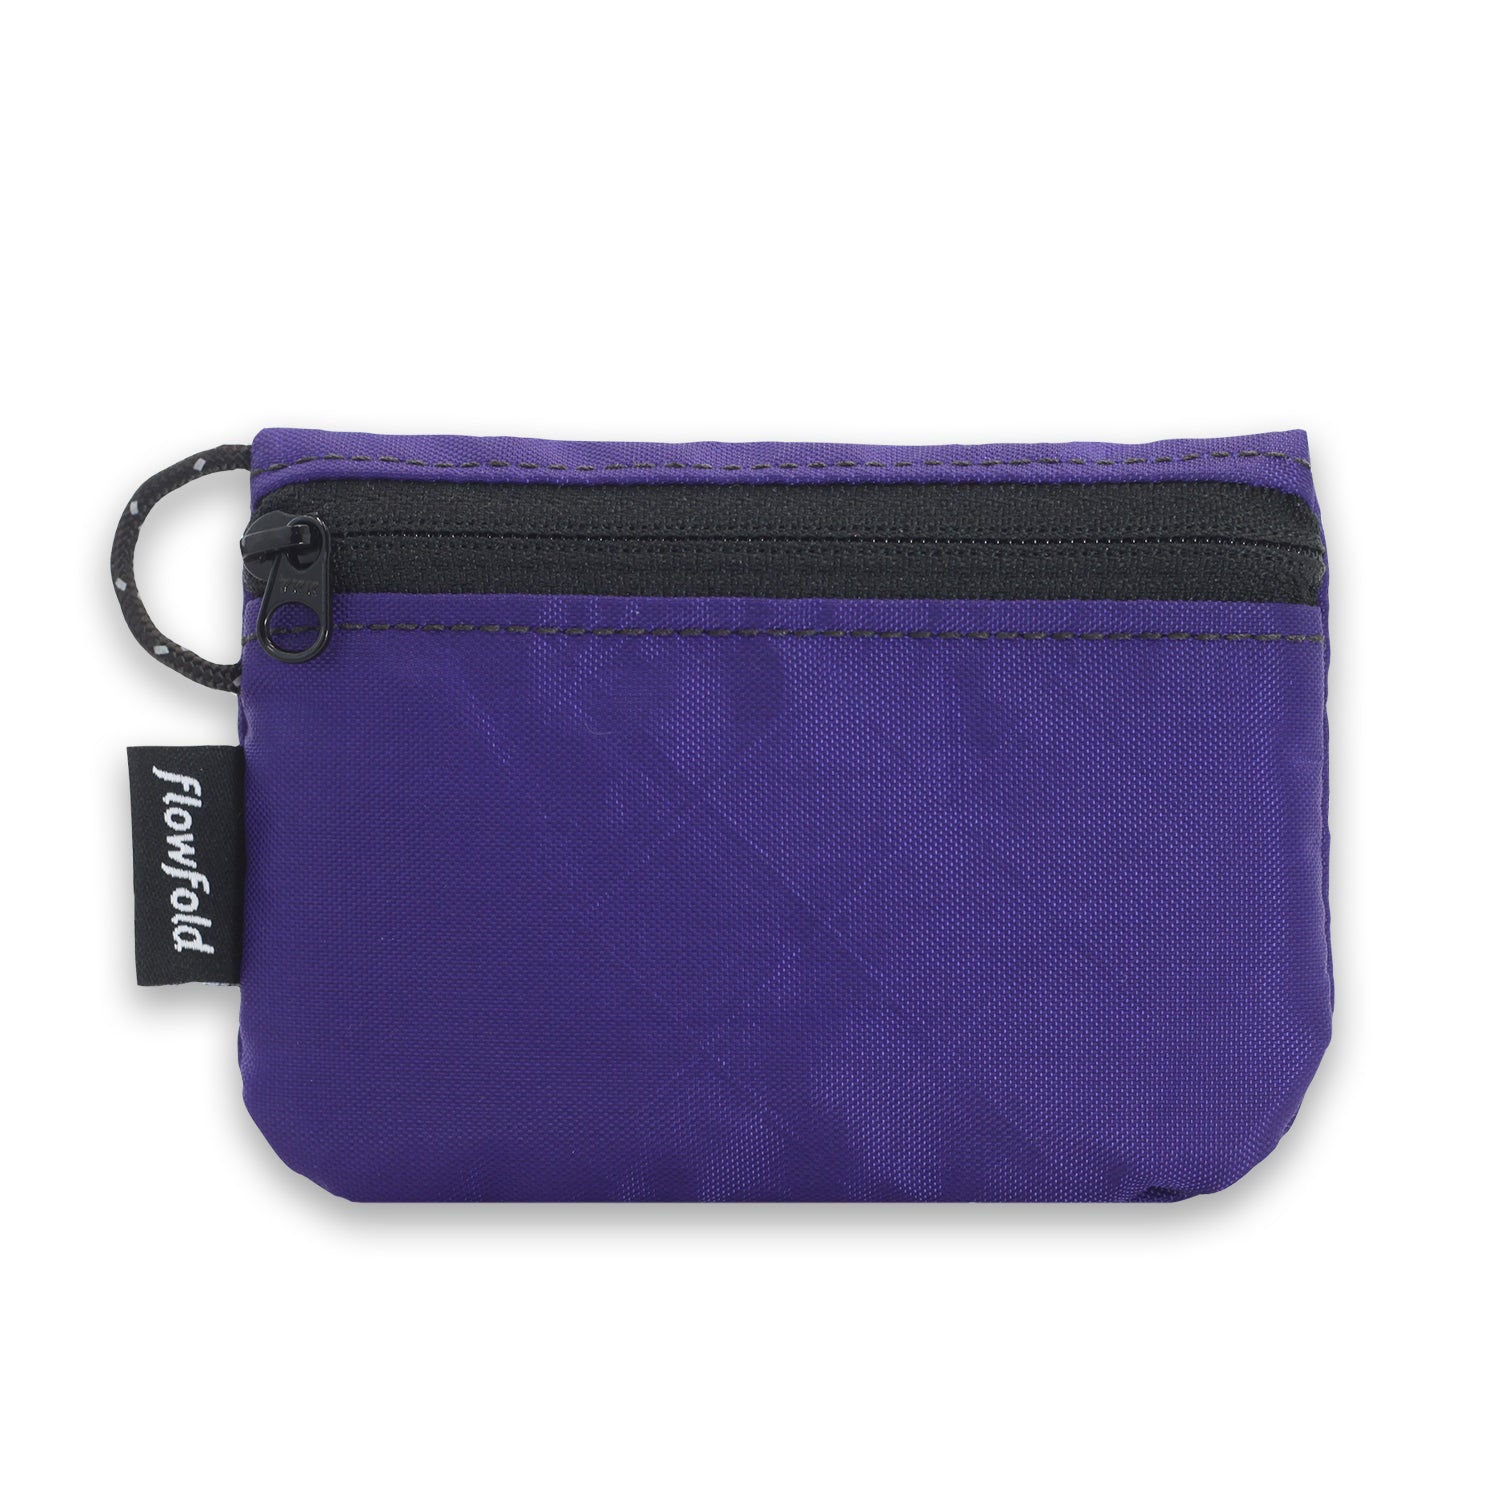 Flowfold Essentialist Zippered Mini Pouch Wallet, EcoPak: Recycled Purple